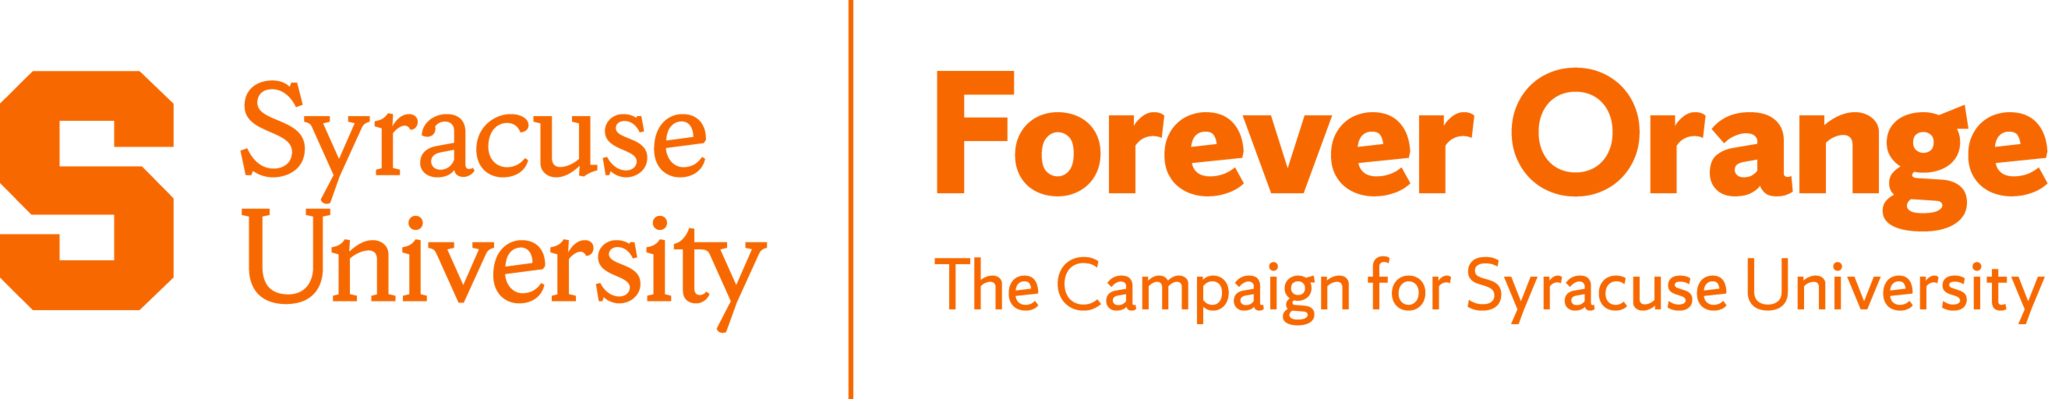 Syracuse University | Forever Orange The Campaign for Syracuse University